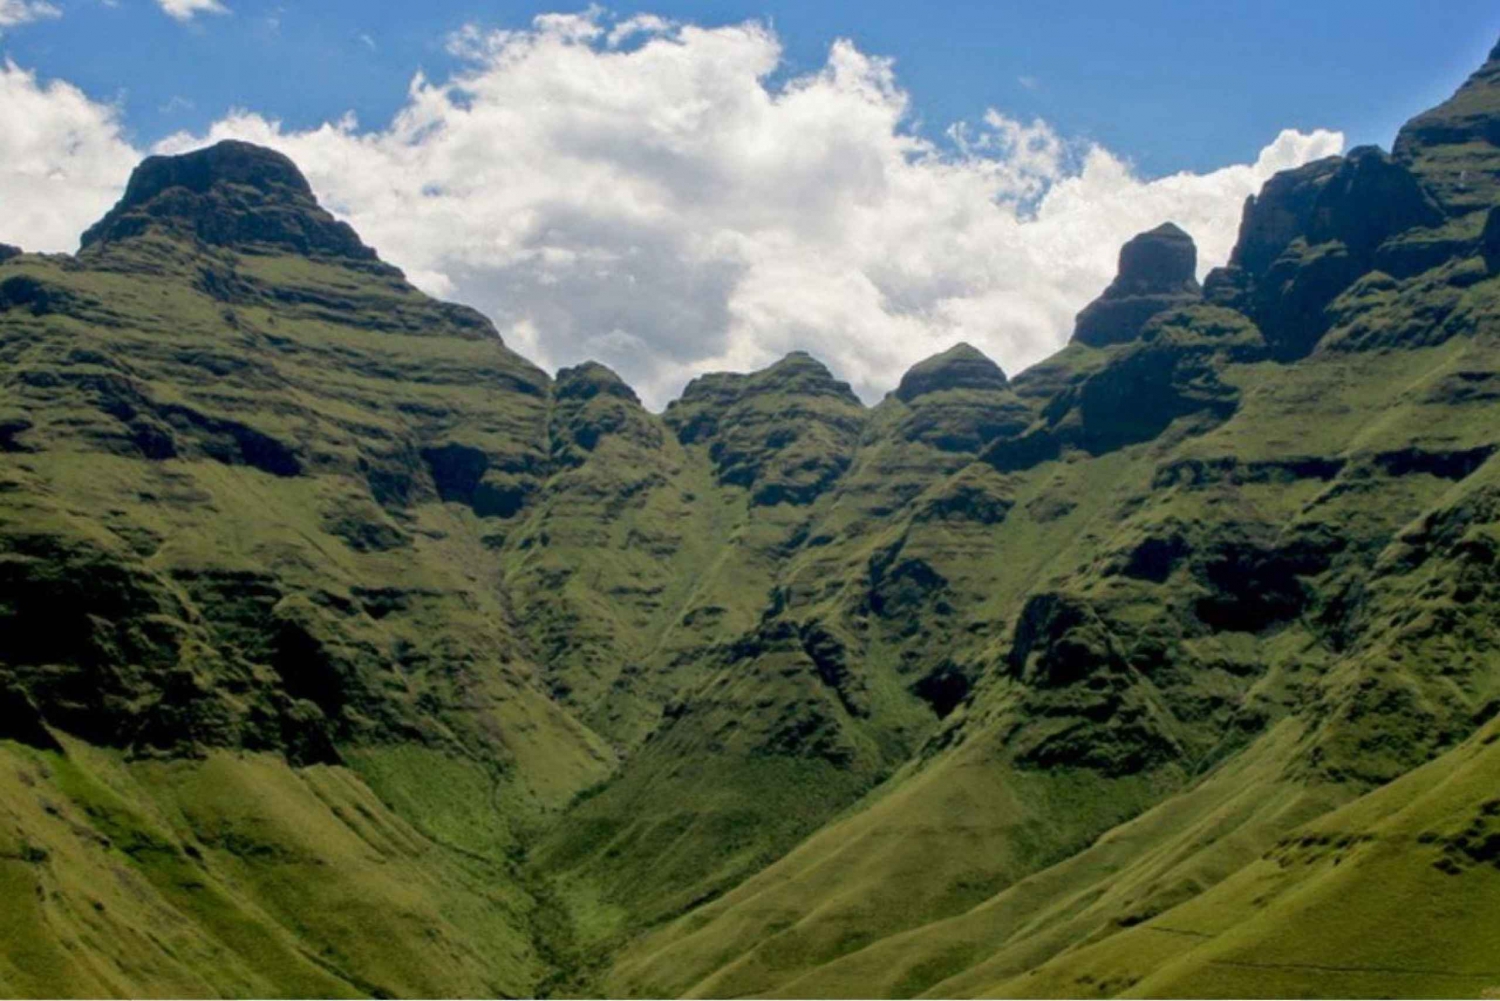 Drakensberg Mountain & Mandela Capture Site Tour From Durban